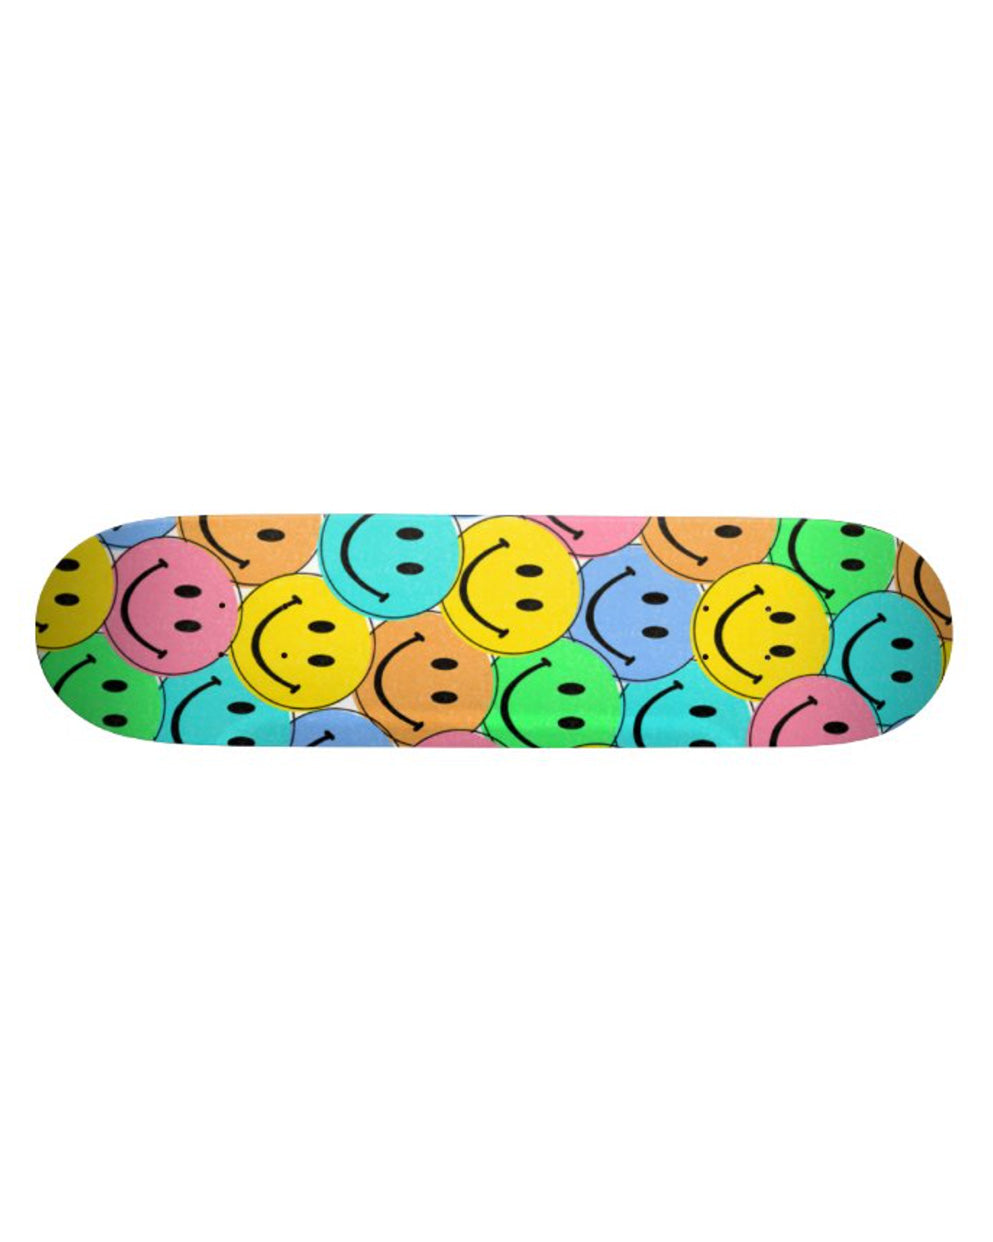 Be Happy Skateboard Deck